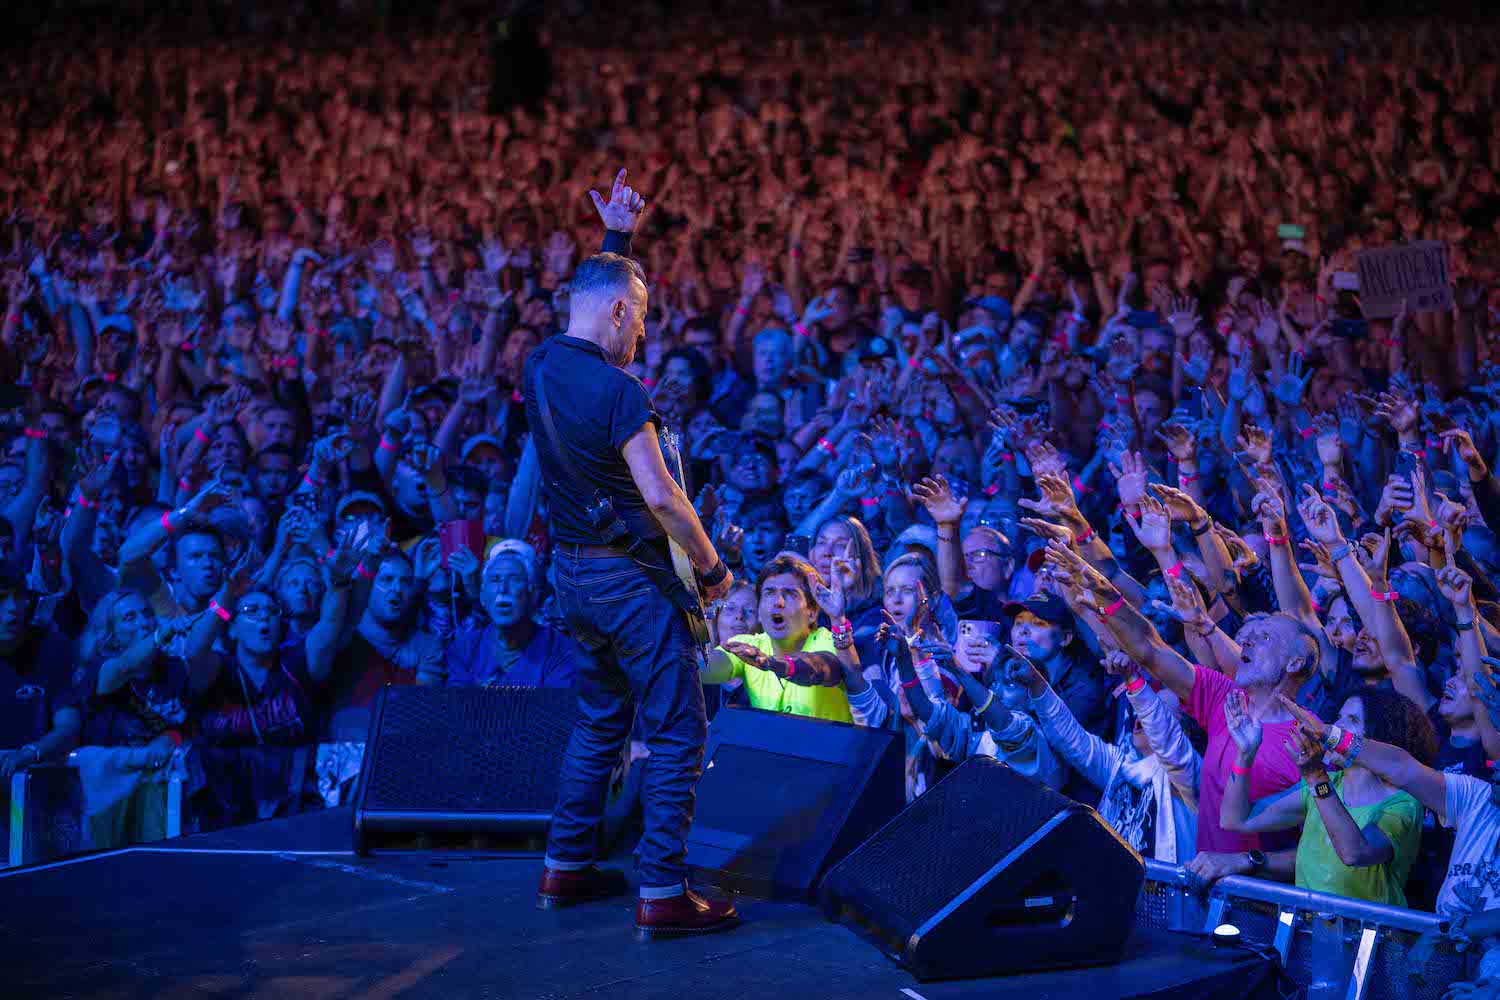 Bruce Springsteen & E Street Band at Ullevi, Gothenburg, Sweden on June 26, 2023.